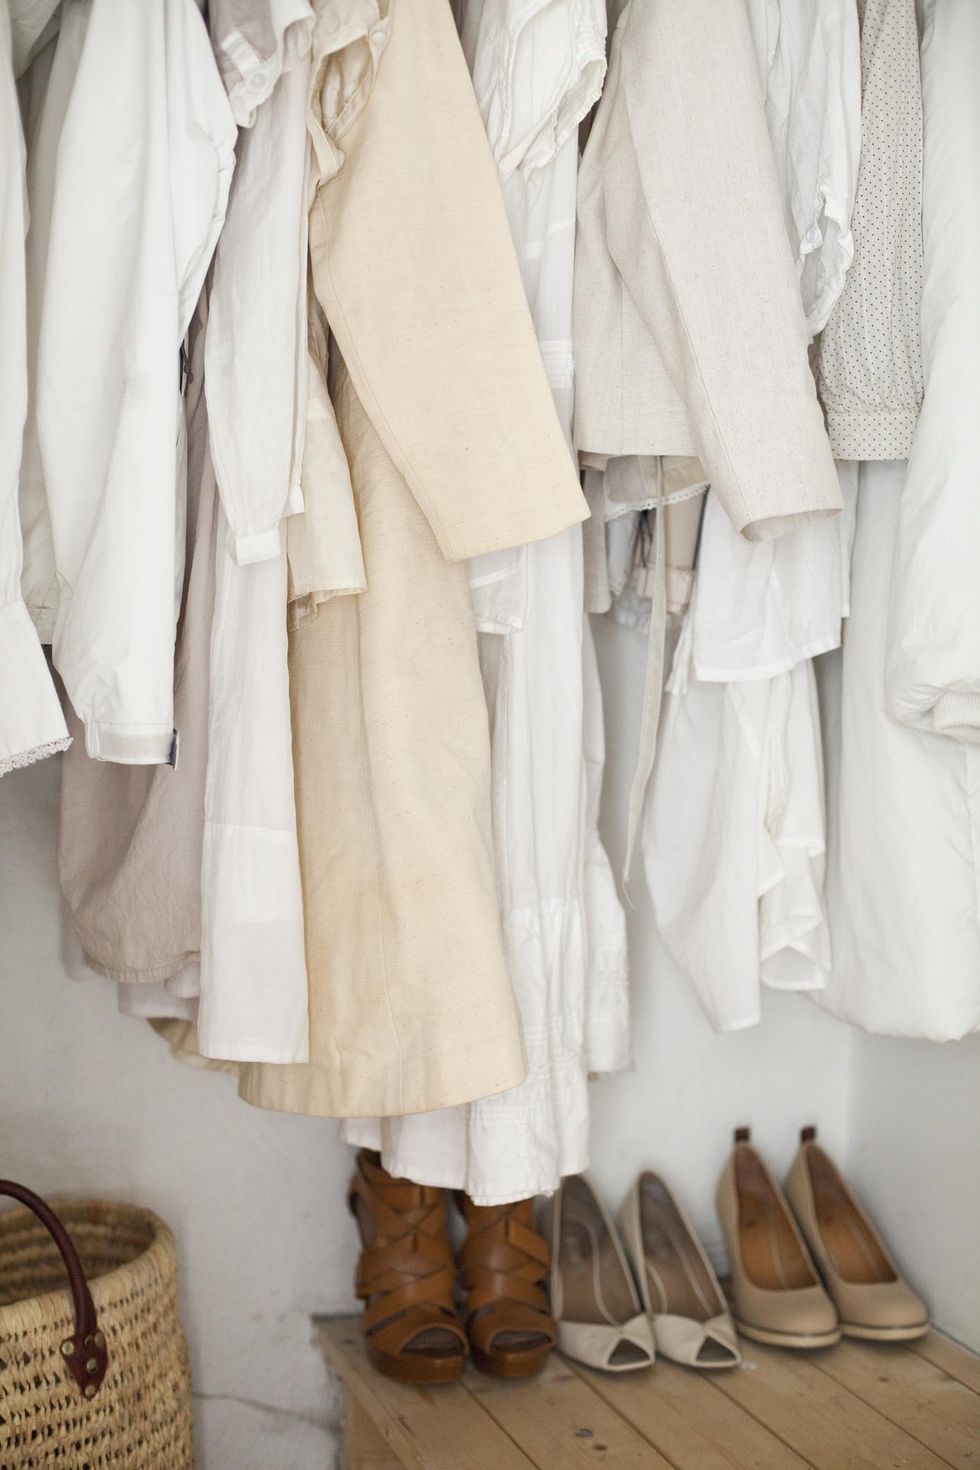 <p>Geef toe: je hebt geen tien witte jurkjes nodig. Trek daarom alles behalve de mooiste exemplaren die je wél draagt uit de kast en doneer de rest aan de kledingcontainer of&nbsp;tweedehandszaak.&nbsp;</p>